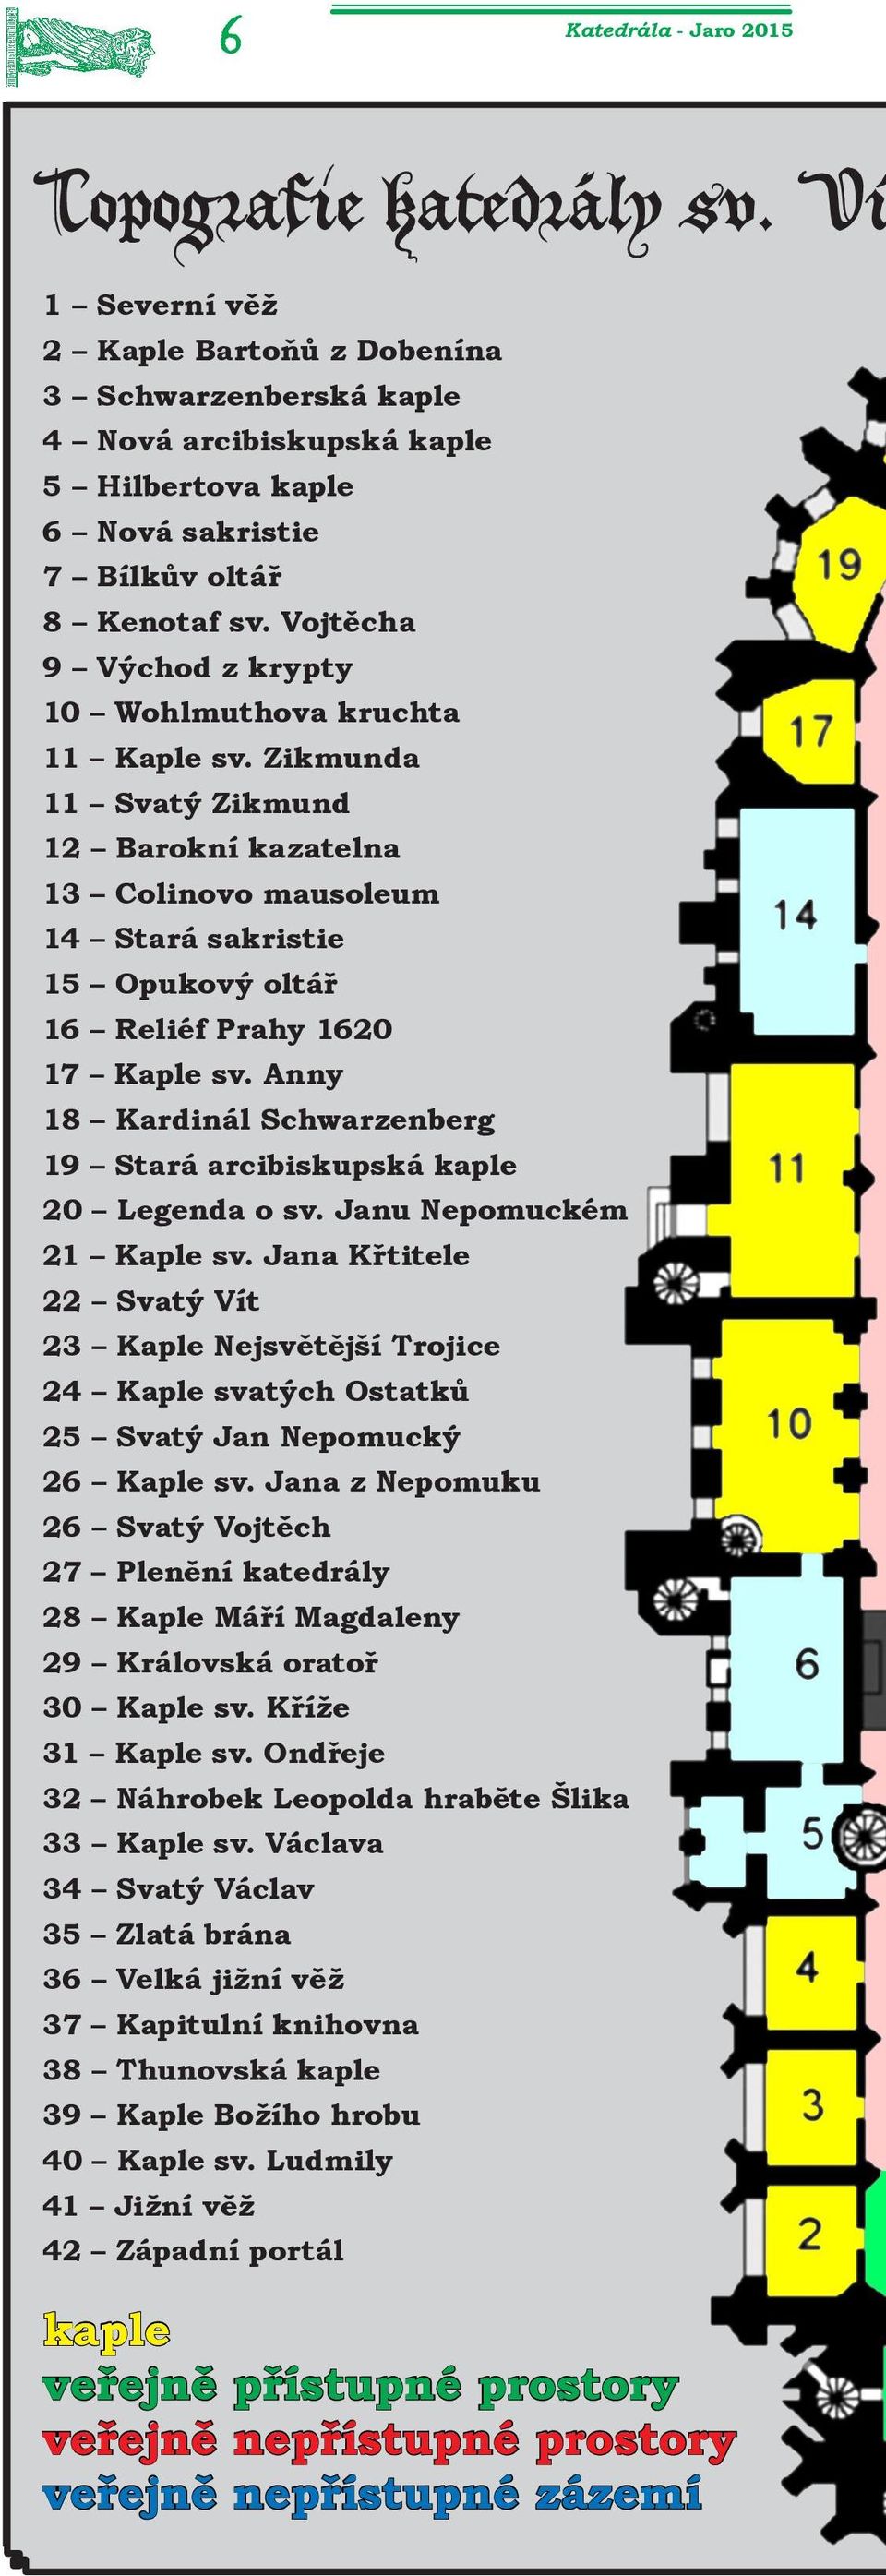 Vojtěcha 9 Východ z krypty 10 Wohlmuthova kruchta 11 Kaple sv.